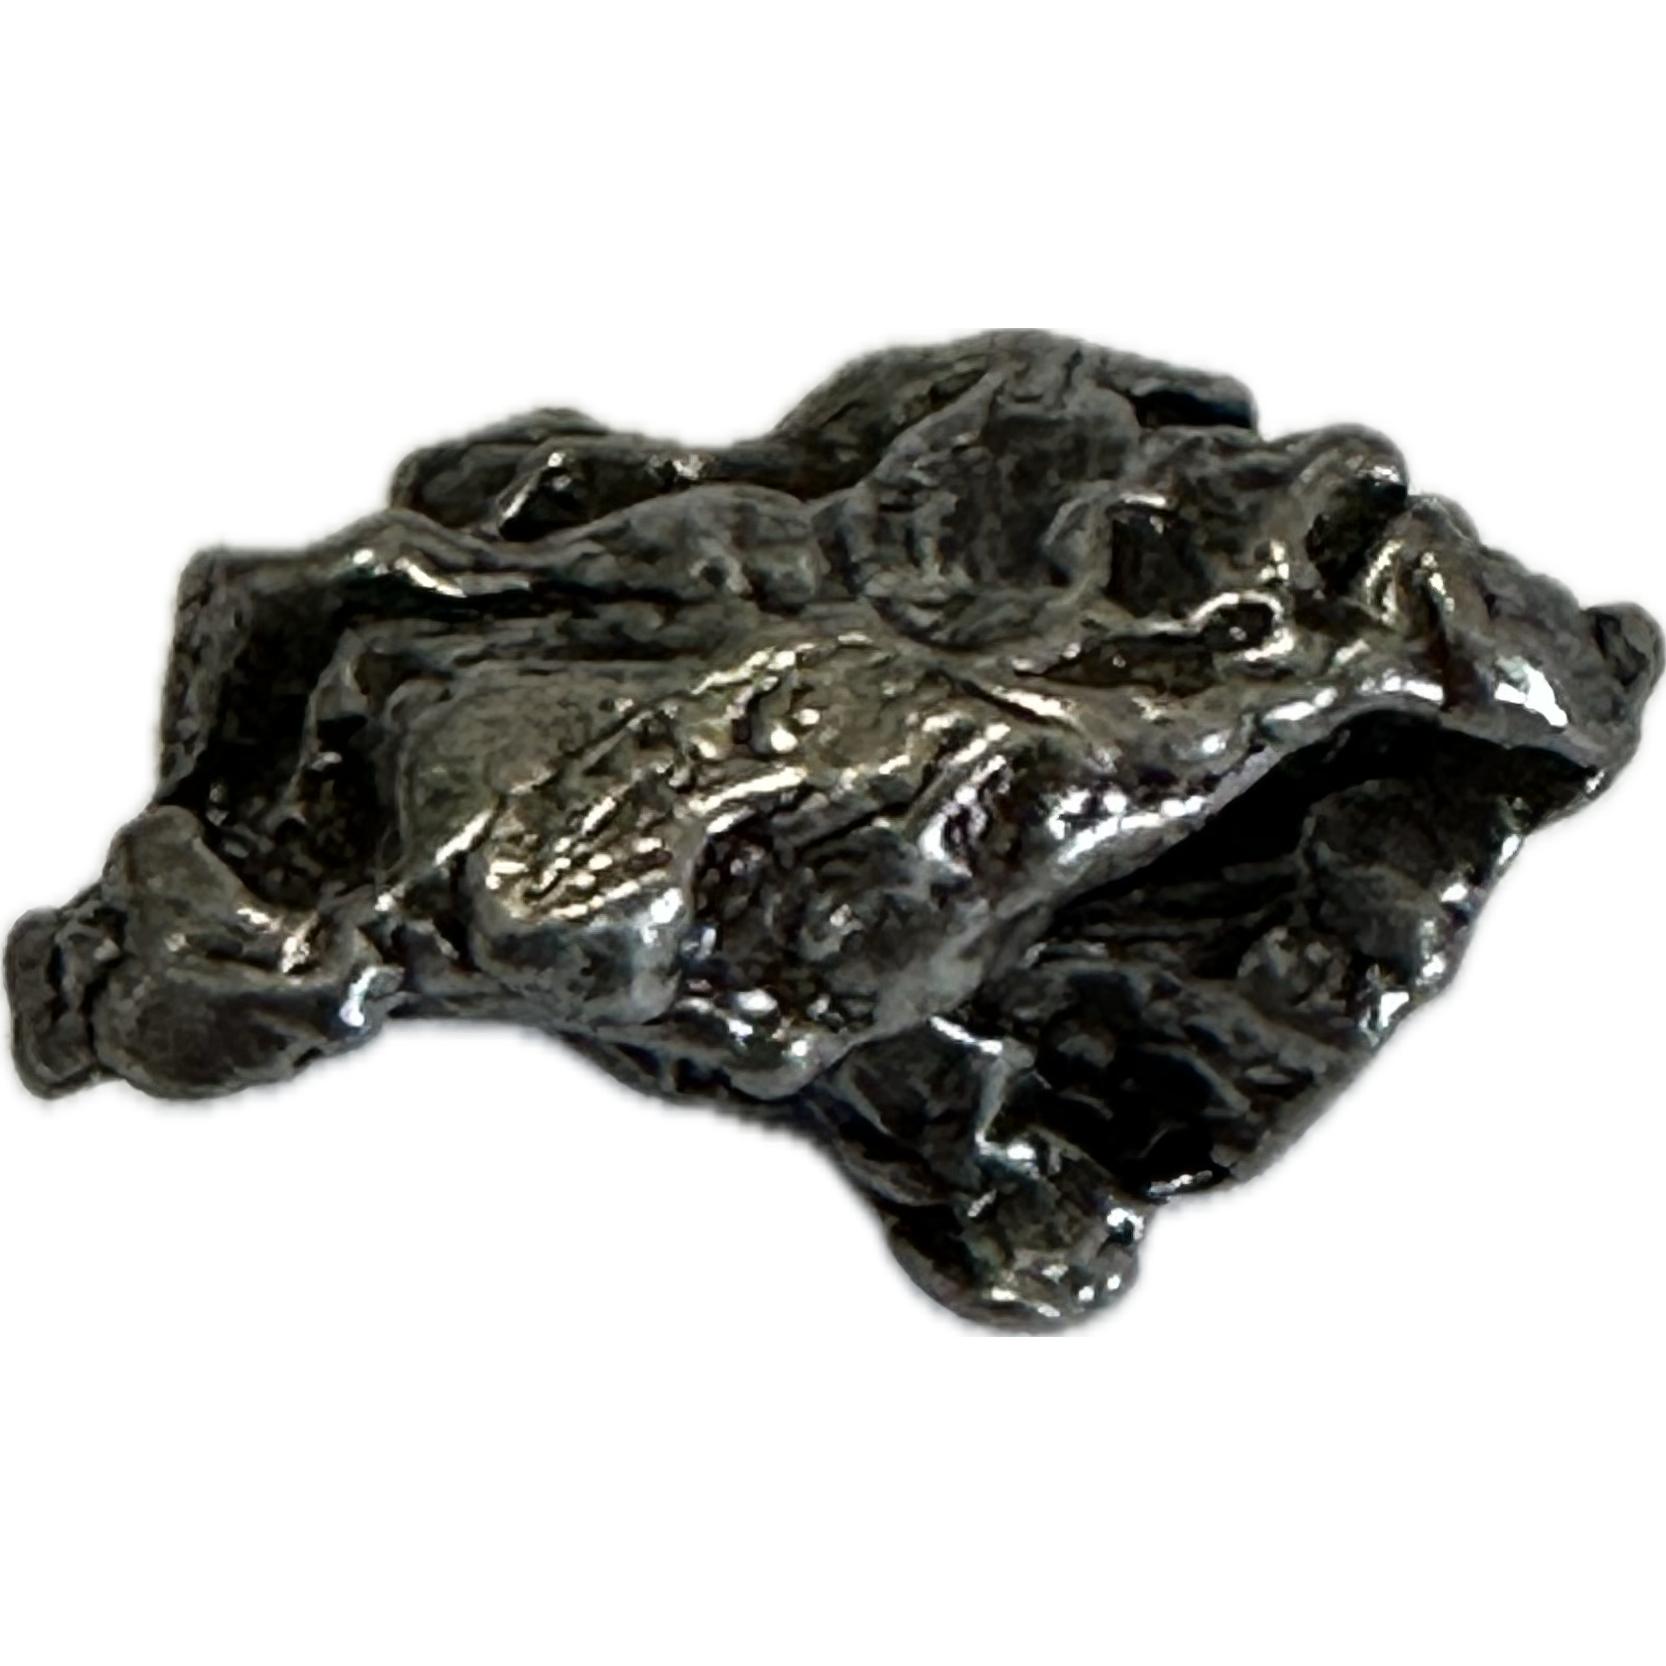 Campo del Cielo meteorite,  Argentina , 11.63 grams Prehistoric Online